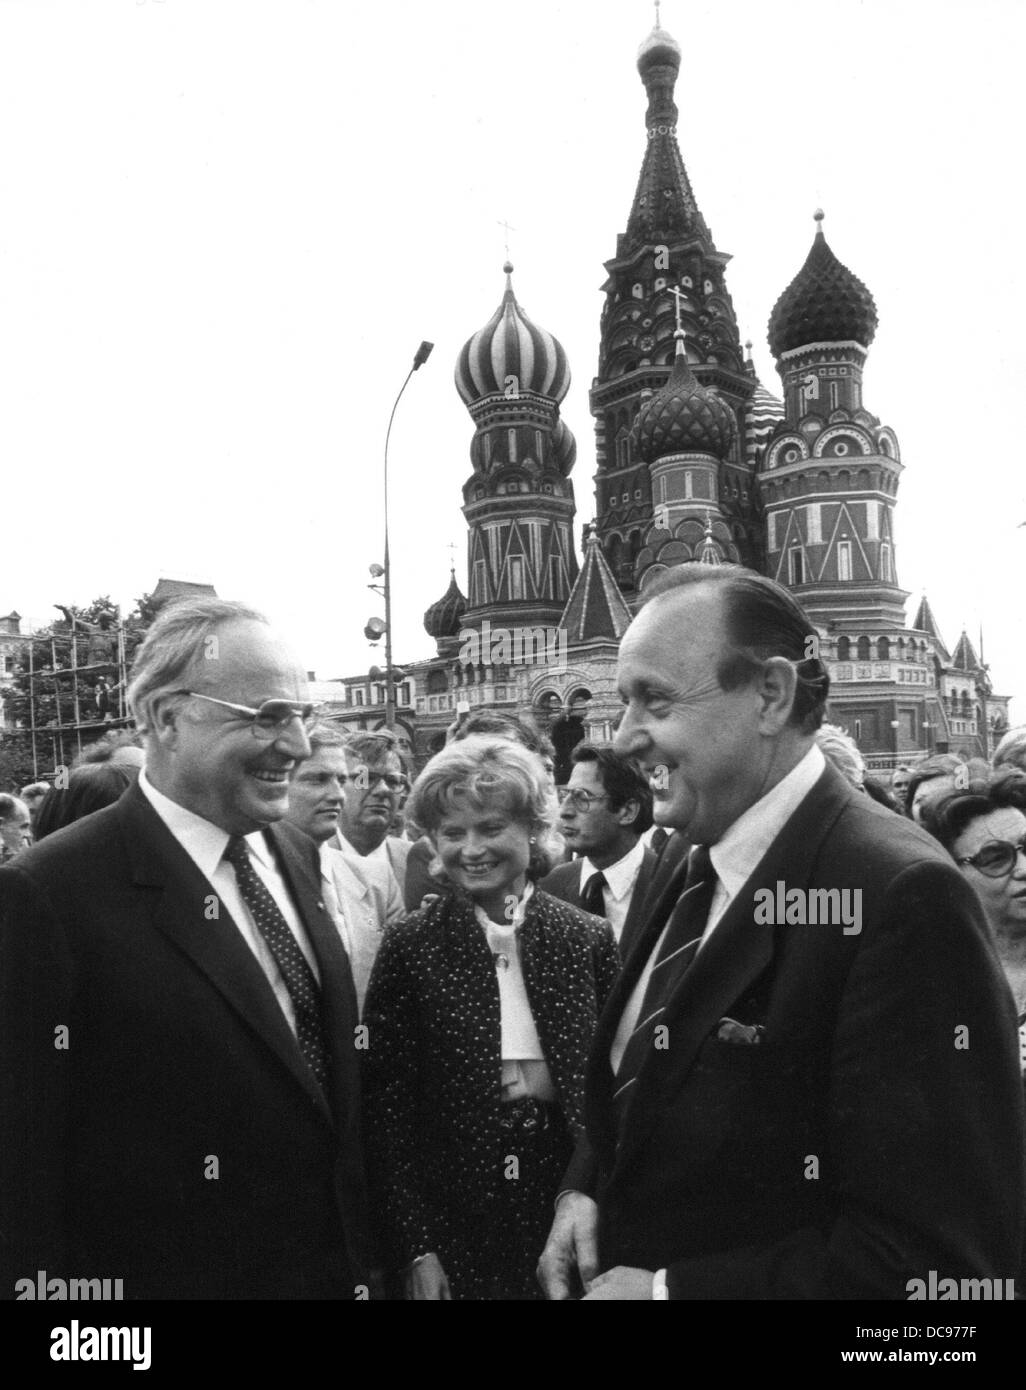 Le chancelier allemand Helmut Kohl (l), son épouse Marianne Kohl (M) et le ministre des affaires étrangères, Hans-Dietrich Genscher (r) se tenir en face de la Cathédrale Saint Basil's sur la Place Rouge à Moscou le 6 juillet en 1983. Banque D'Images